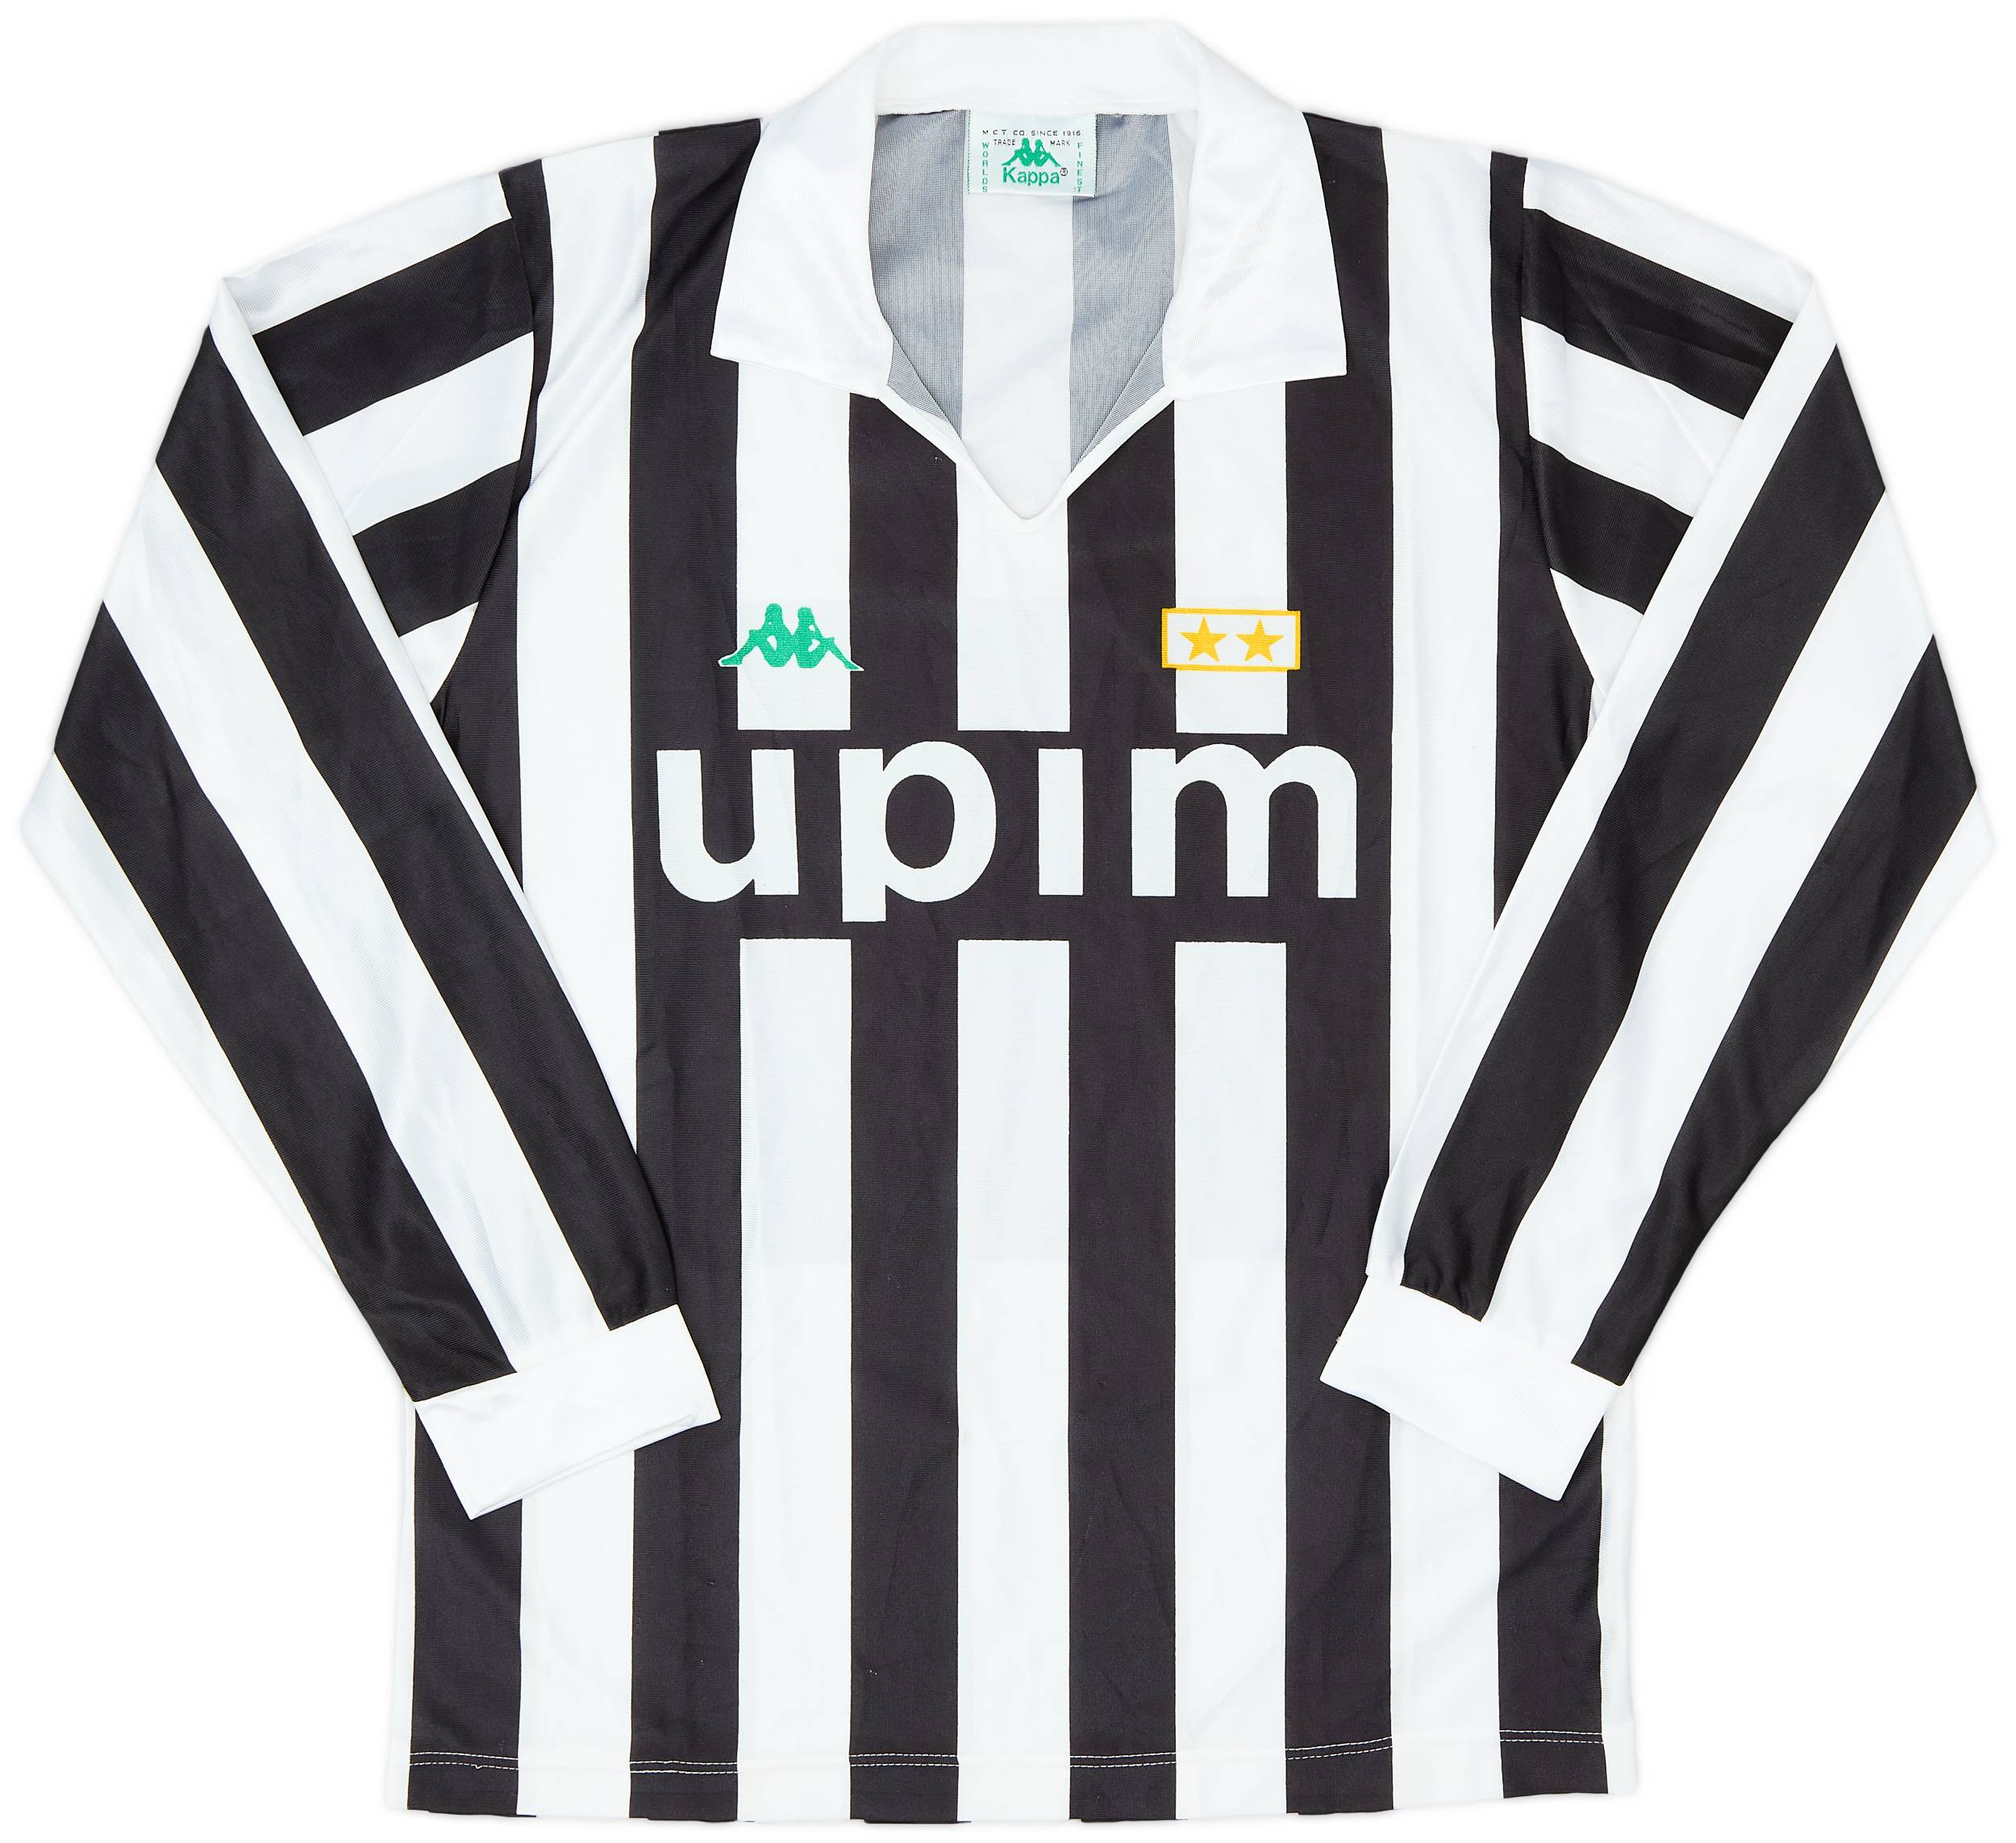 1991-92 Juventus Basic Home L/S Shirt - 9/10 - (M)